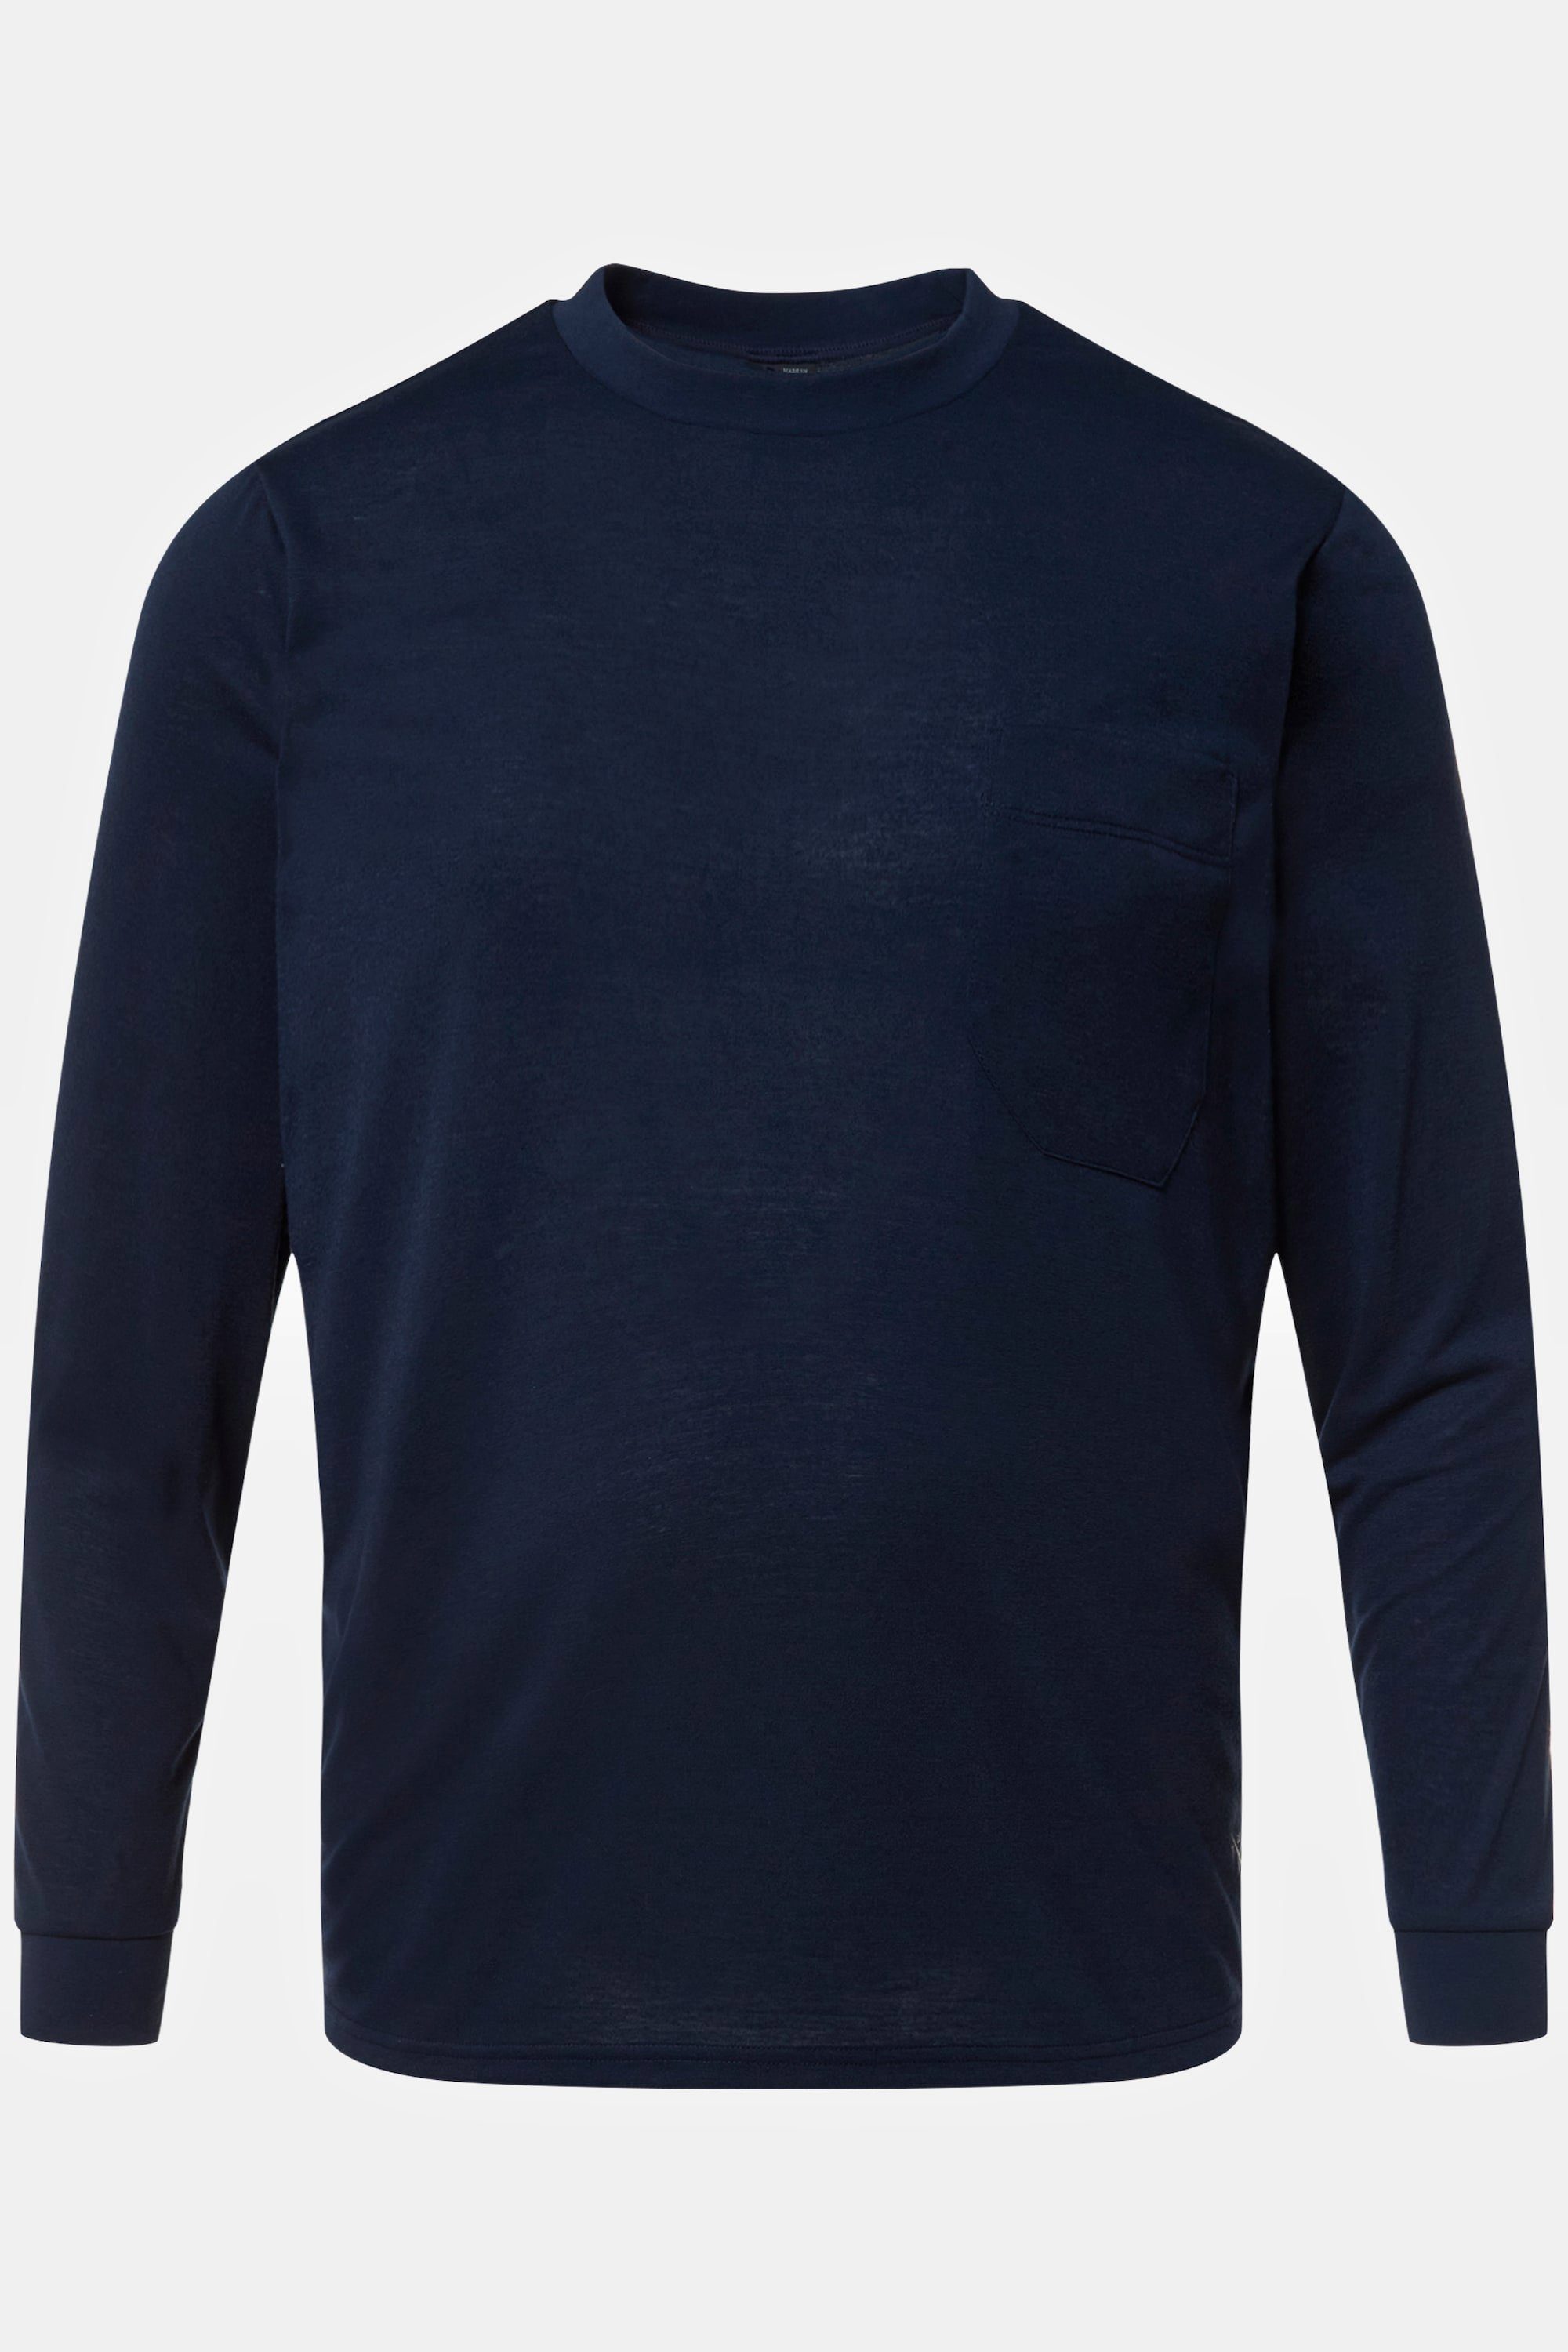 JP1880 T-Shirt Langarmshirt QuickDry Rundhals Brusttasche